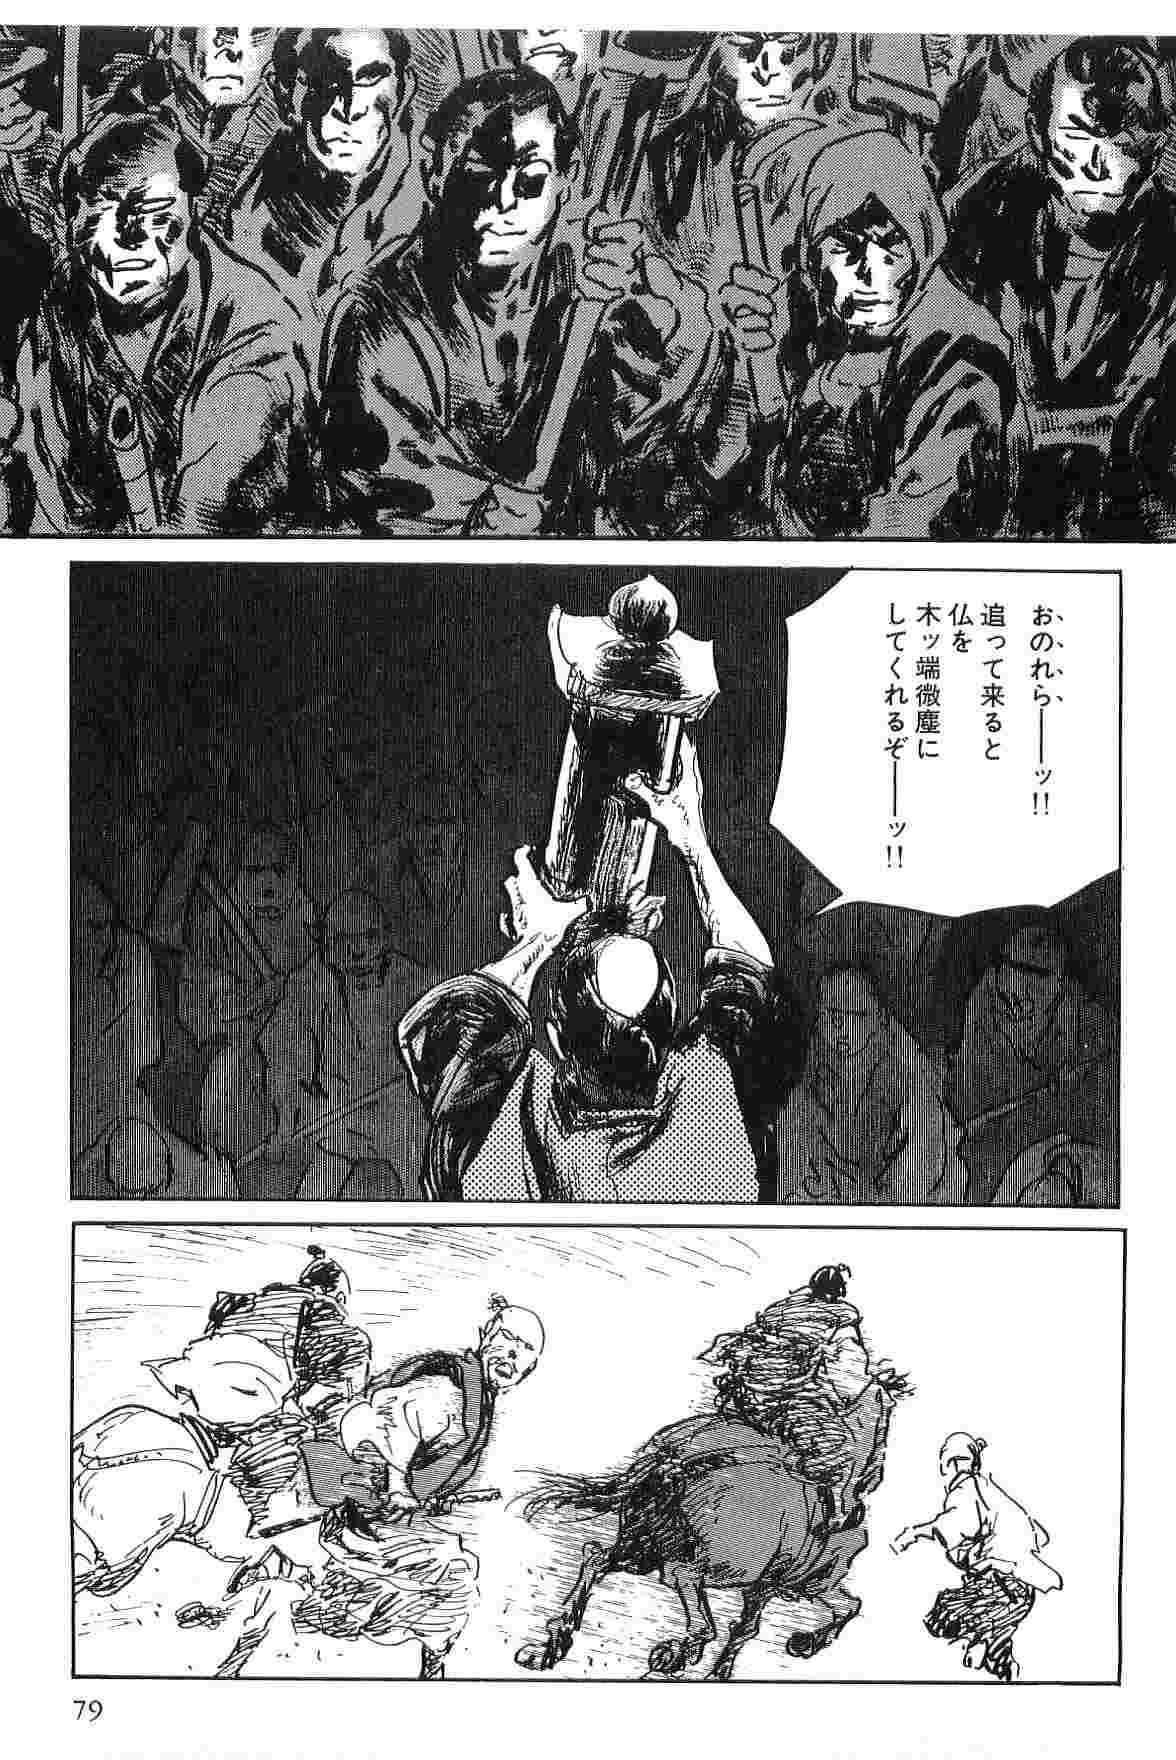 [Koike Kazuo, Kojima Goseki] Hanzou no Mon Vol.6 [小池一夫, 小島剛夕] 半蔵の門 第6巻